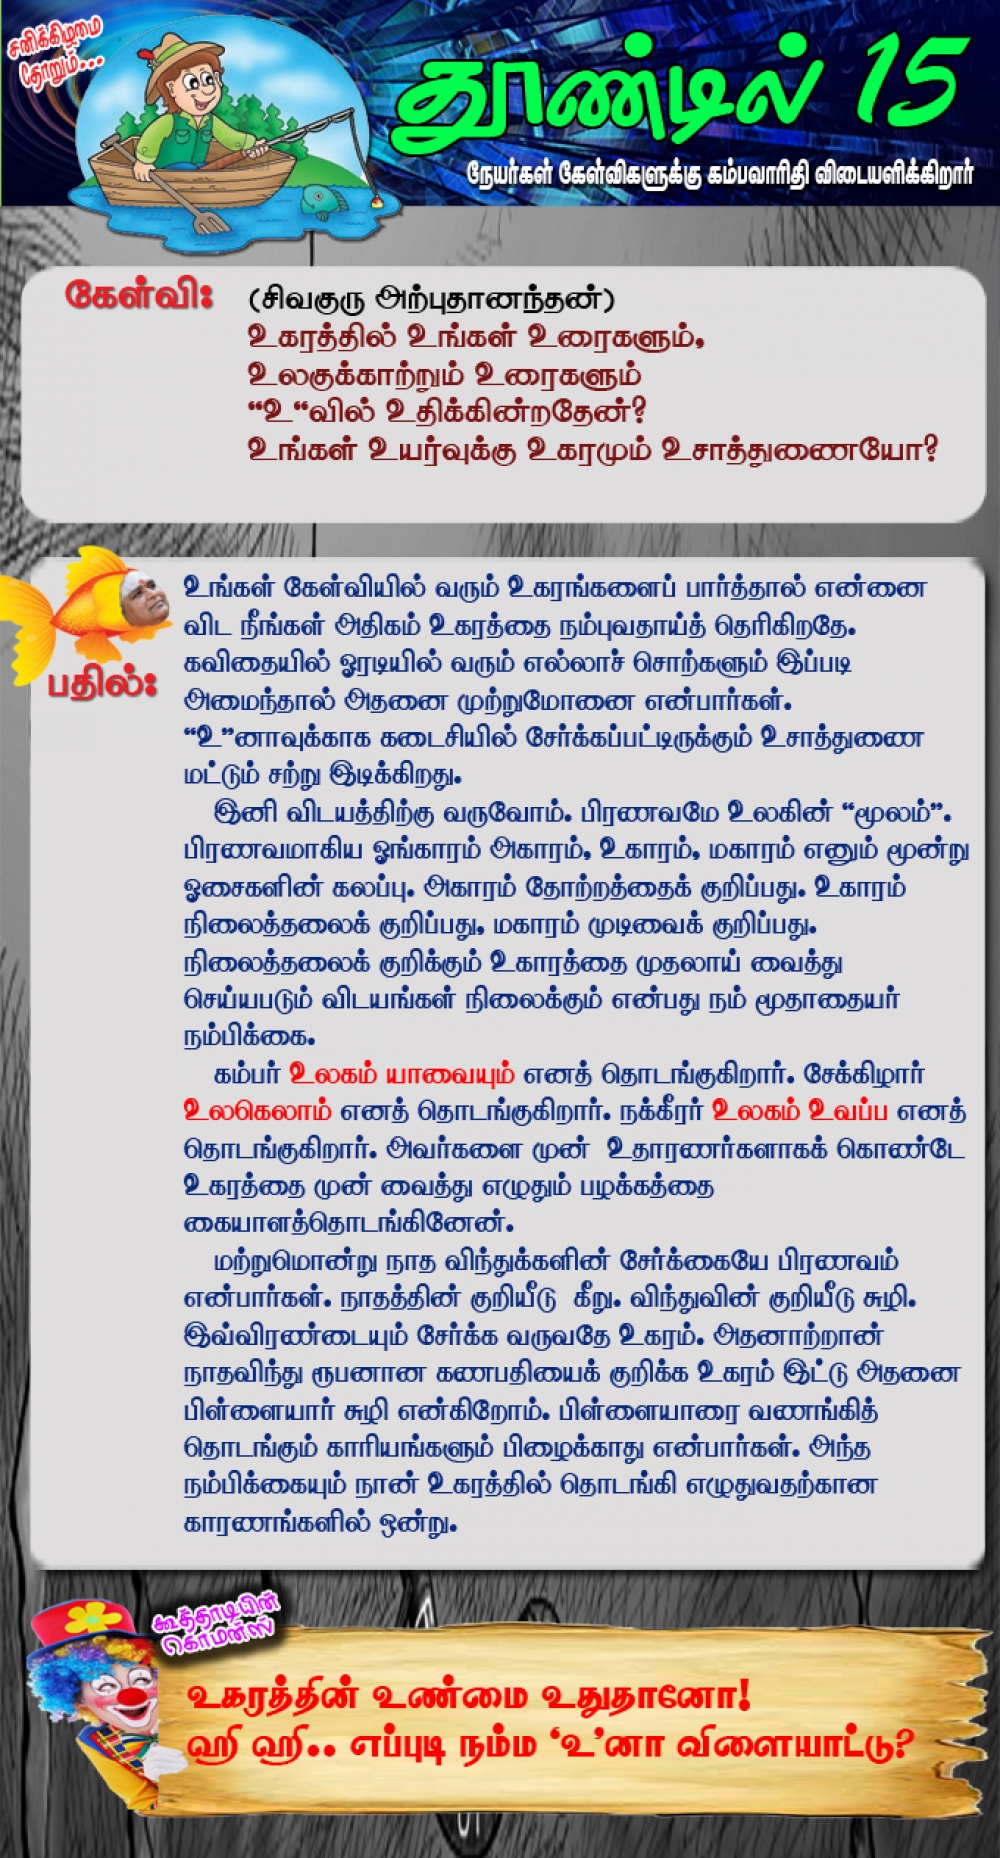 தூண்டில் - 15ஆவது வார கேள்வி பதில்கள் (செப்டெம்பர் 12 முதல் செப்டெம்பர் 19 வரை) 